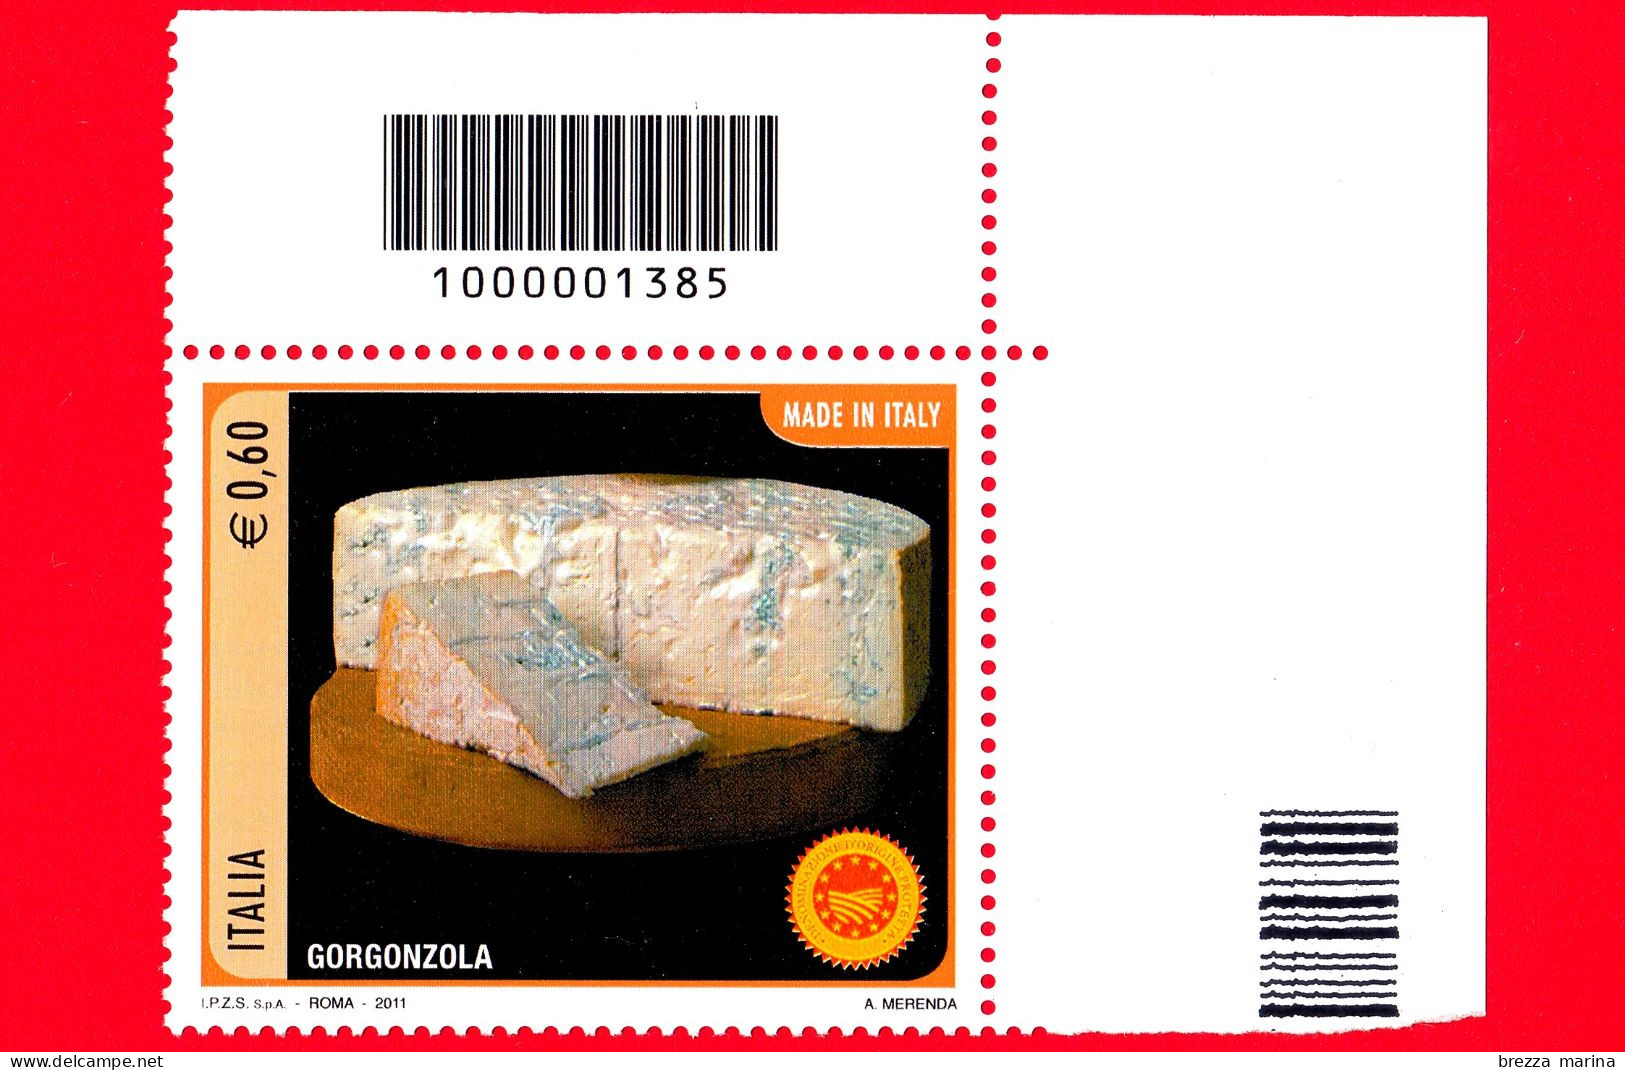 Nuovo - MNH - ITALIA - 2011 - Made In Italy - Formaggi - Gorgonzola - 0.60 - Cod A Barre 1385 - Code-barres